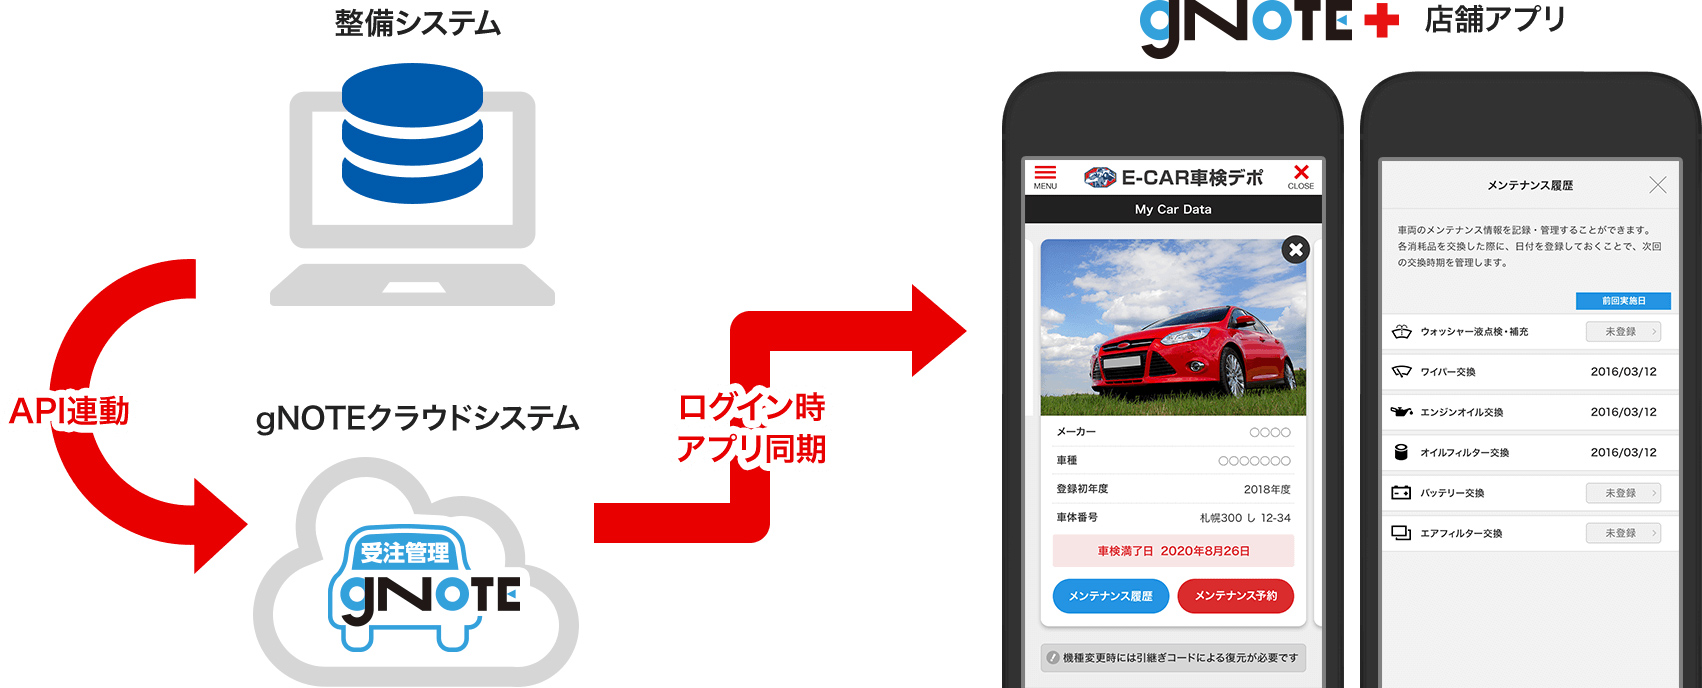 Gnoteプラス 自動車業界専用コミュニケーションアプリ